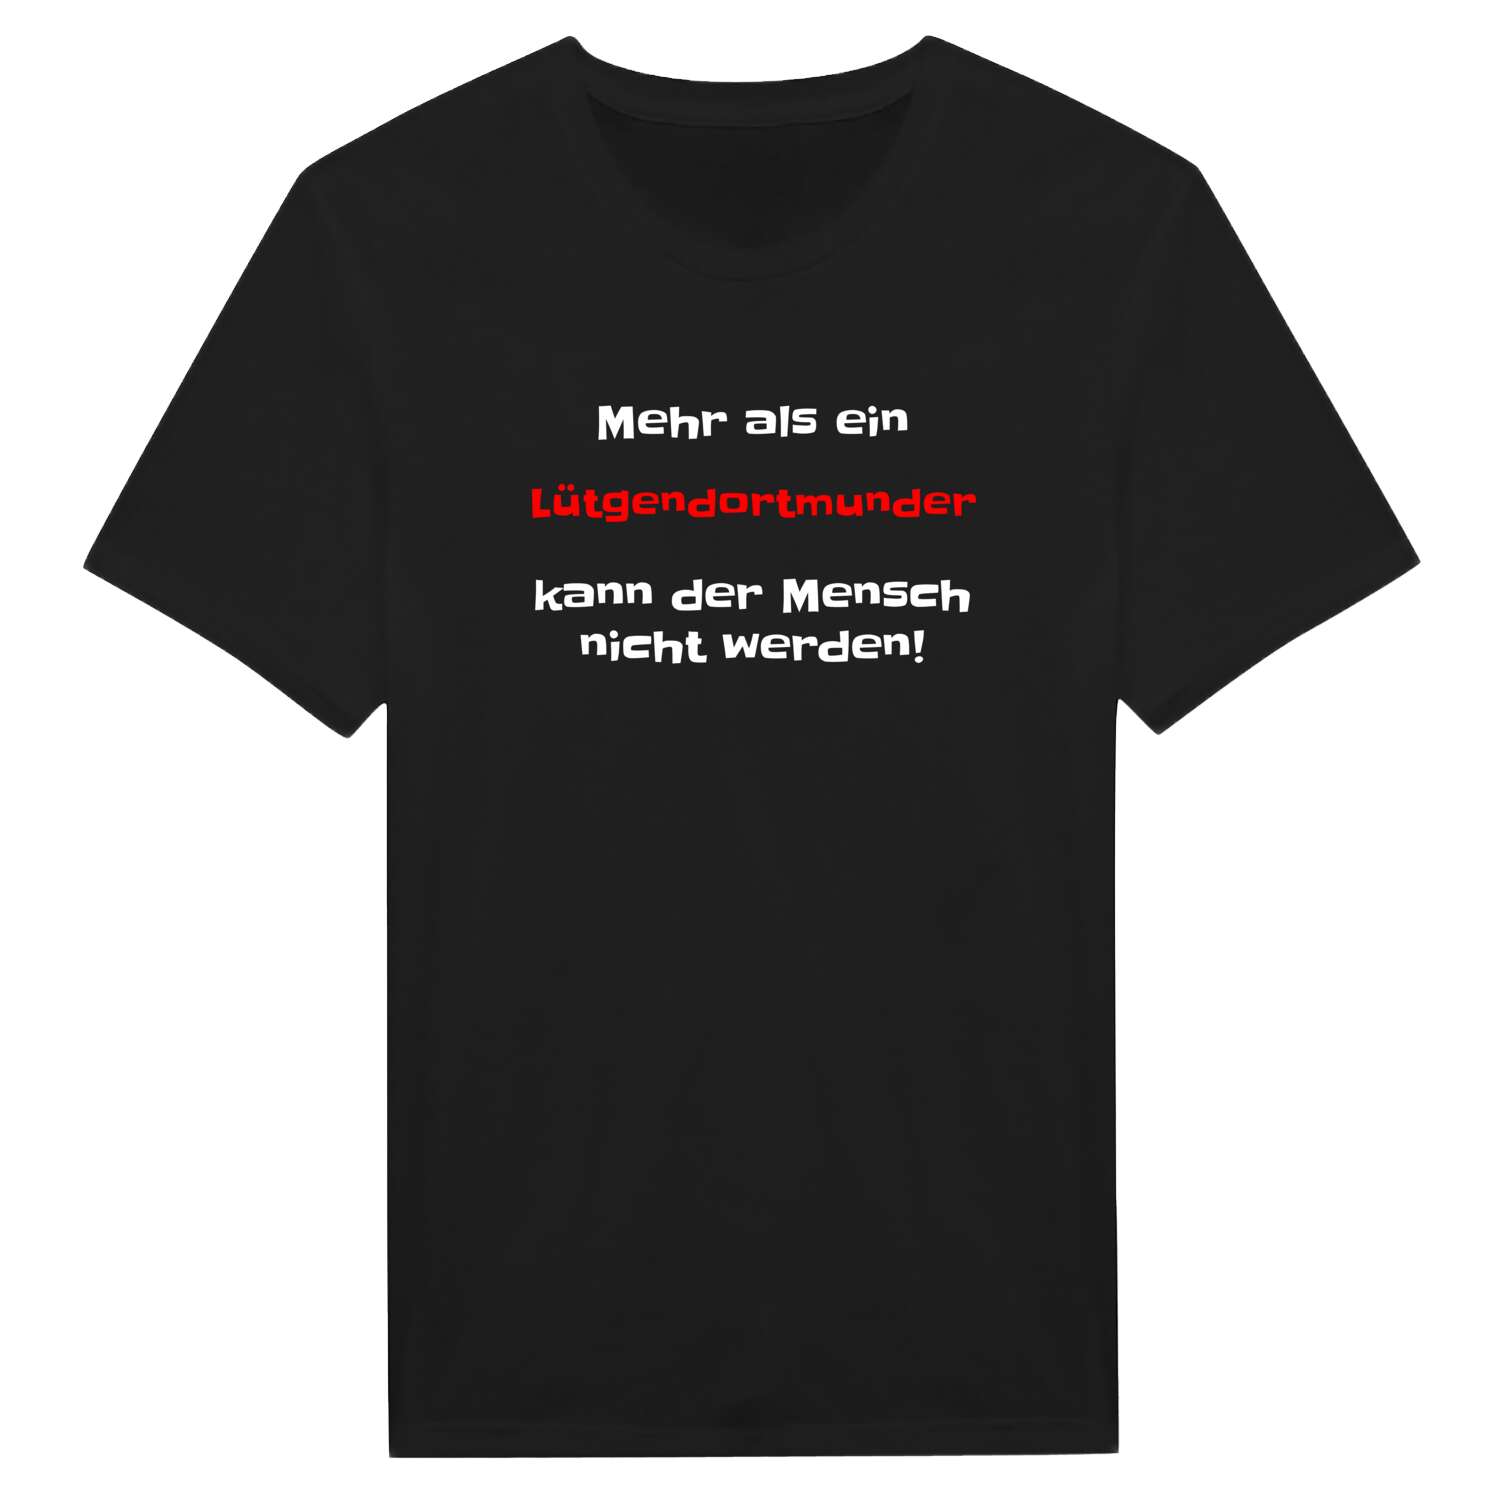 Lütgendortmund T-Shirt »Mehr als ein«